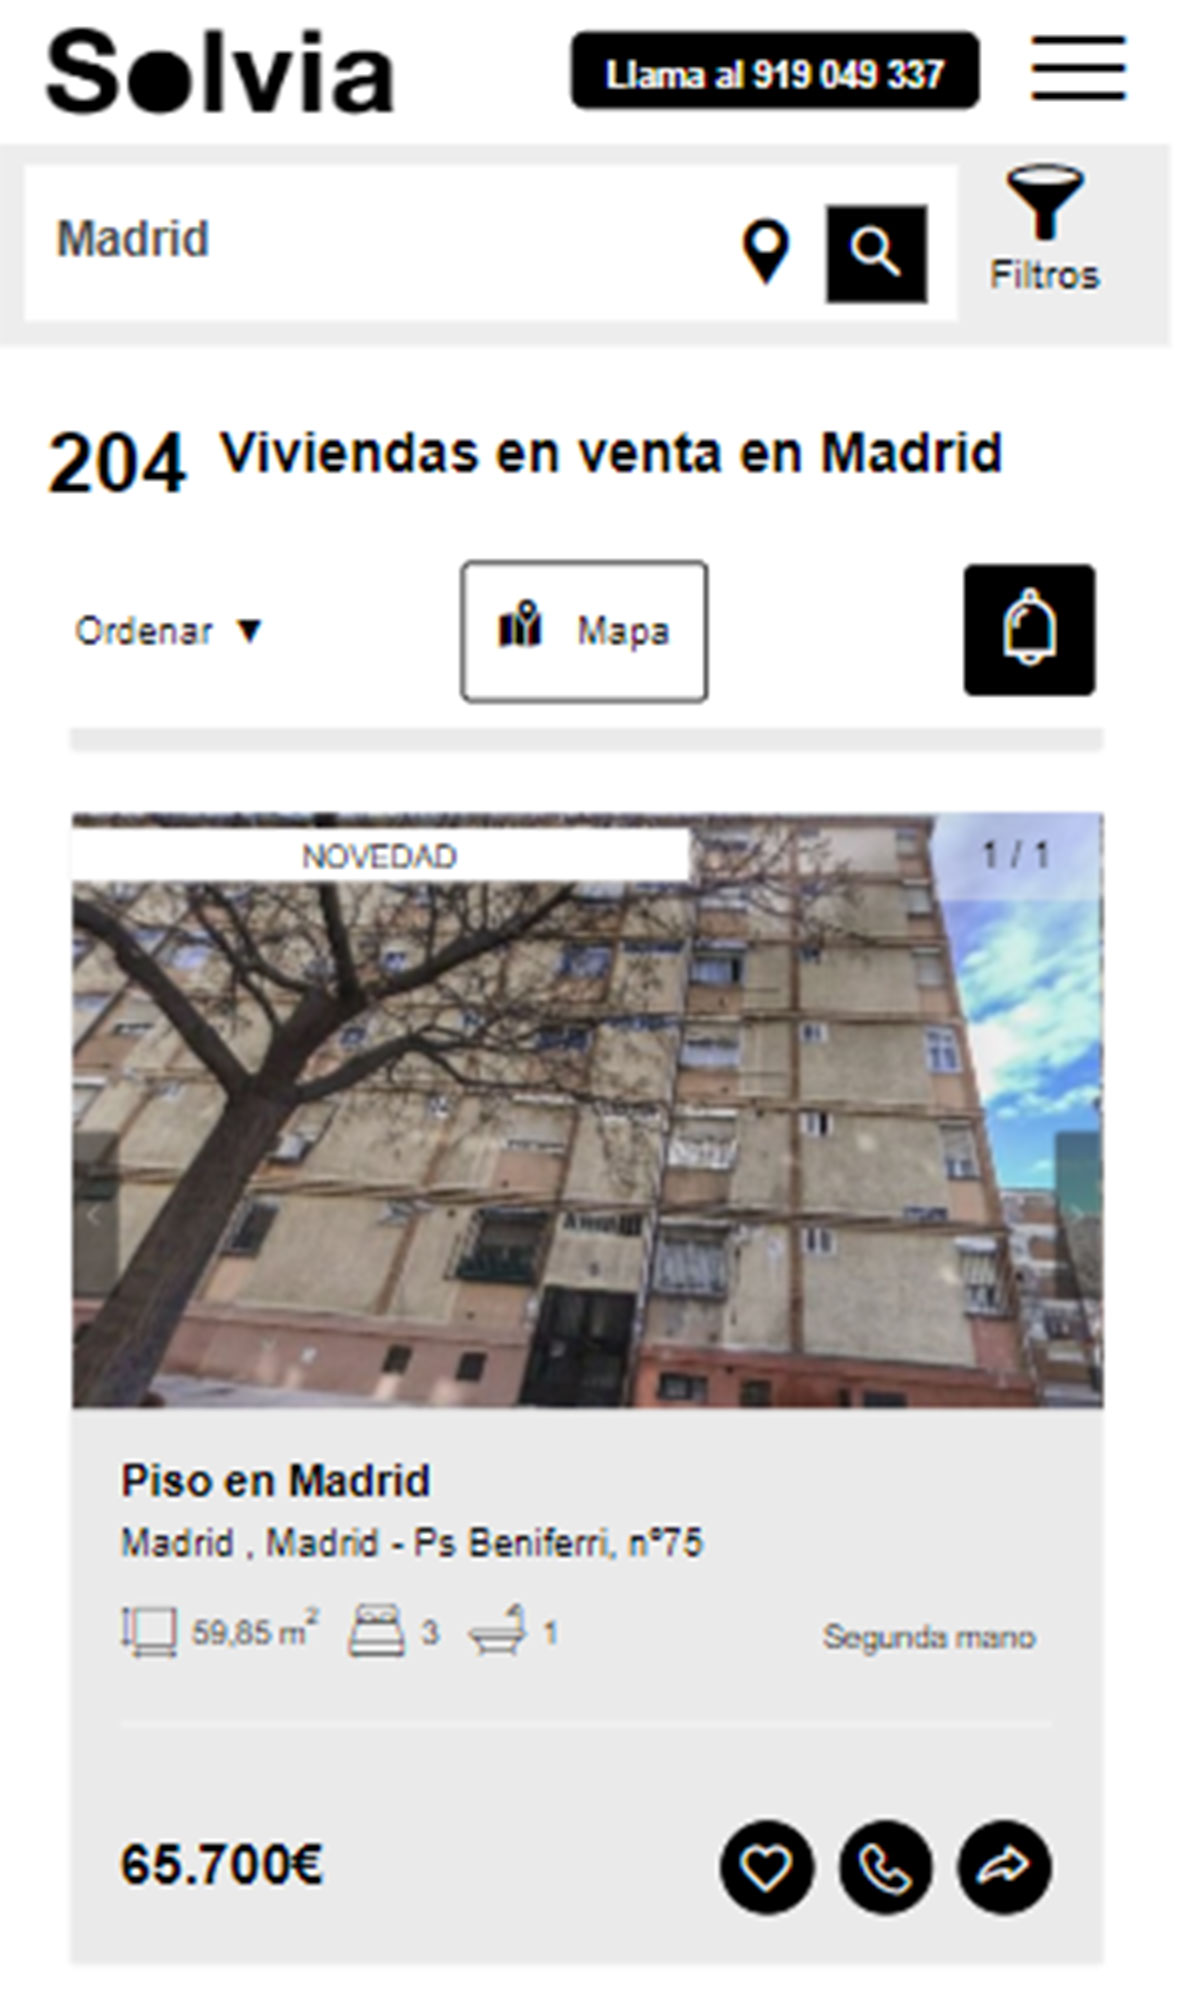 Piso en la ciudad de Madrid por 65.700 euros